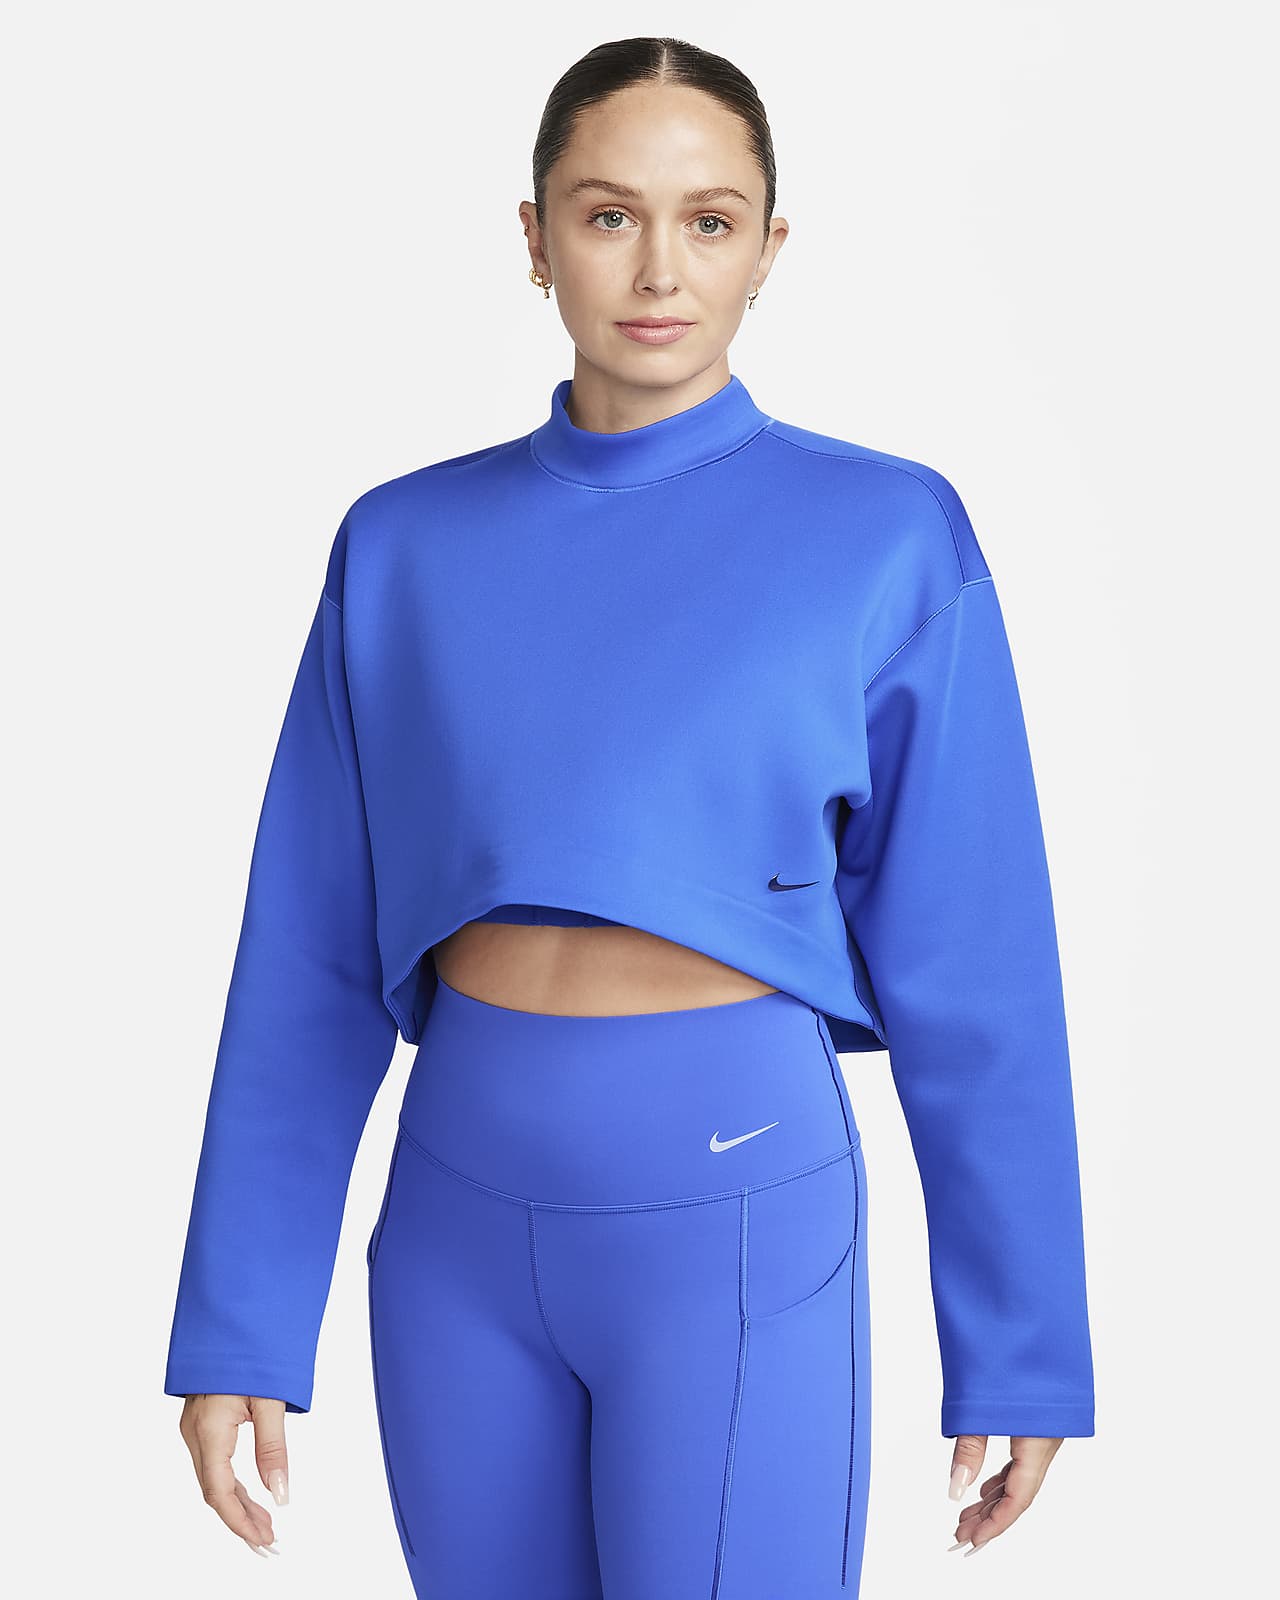 Nike Dri-Fit Women's Blue Capri Pants - L (12-14)